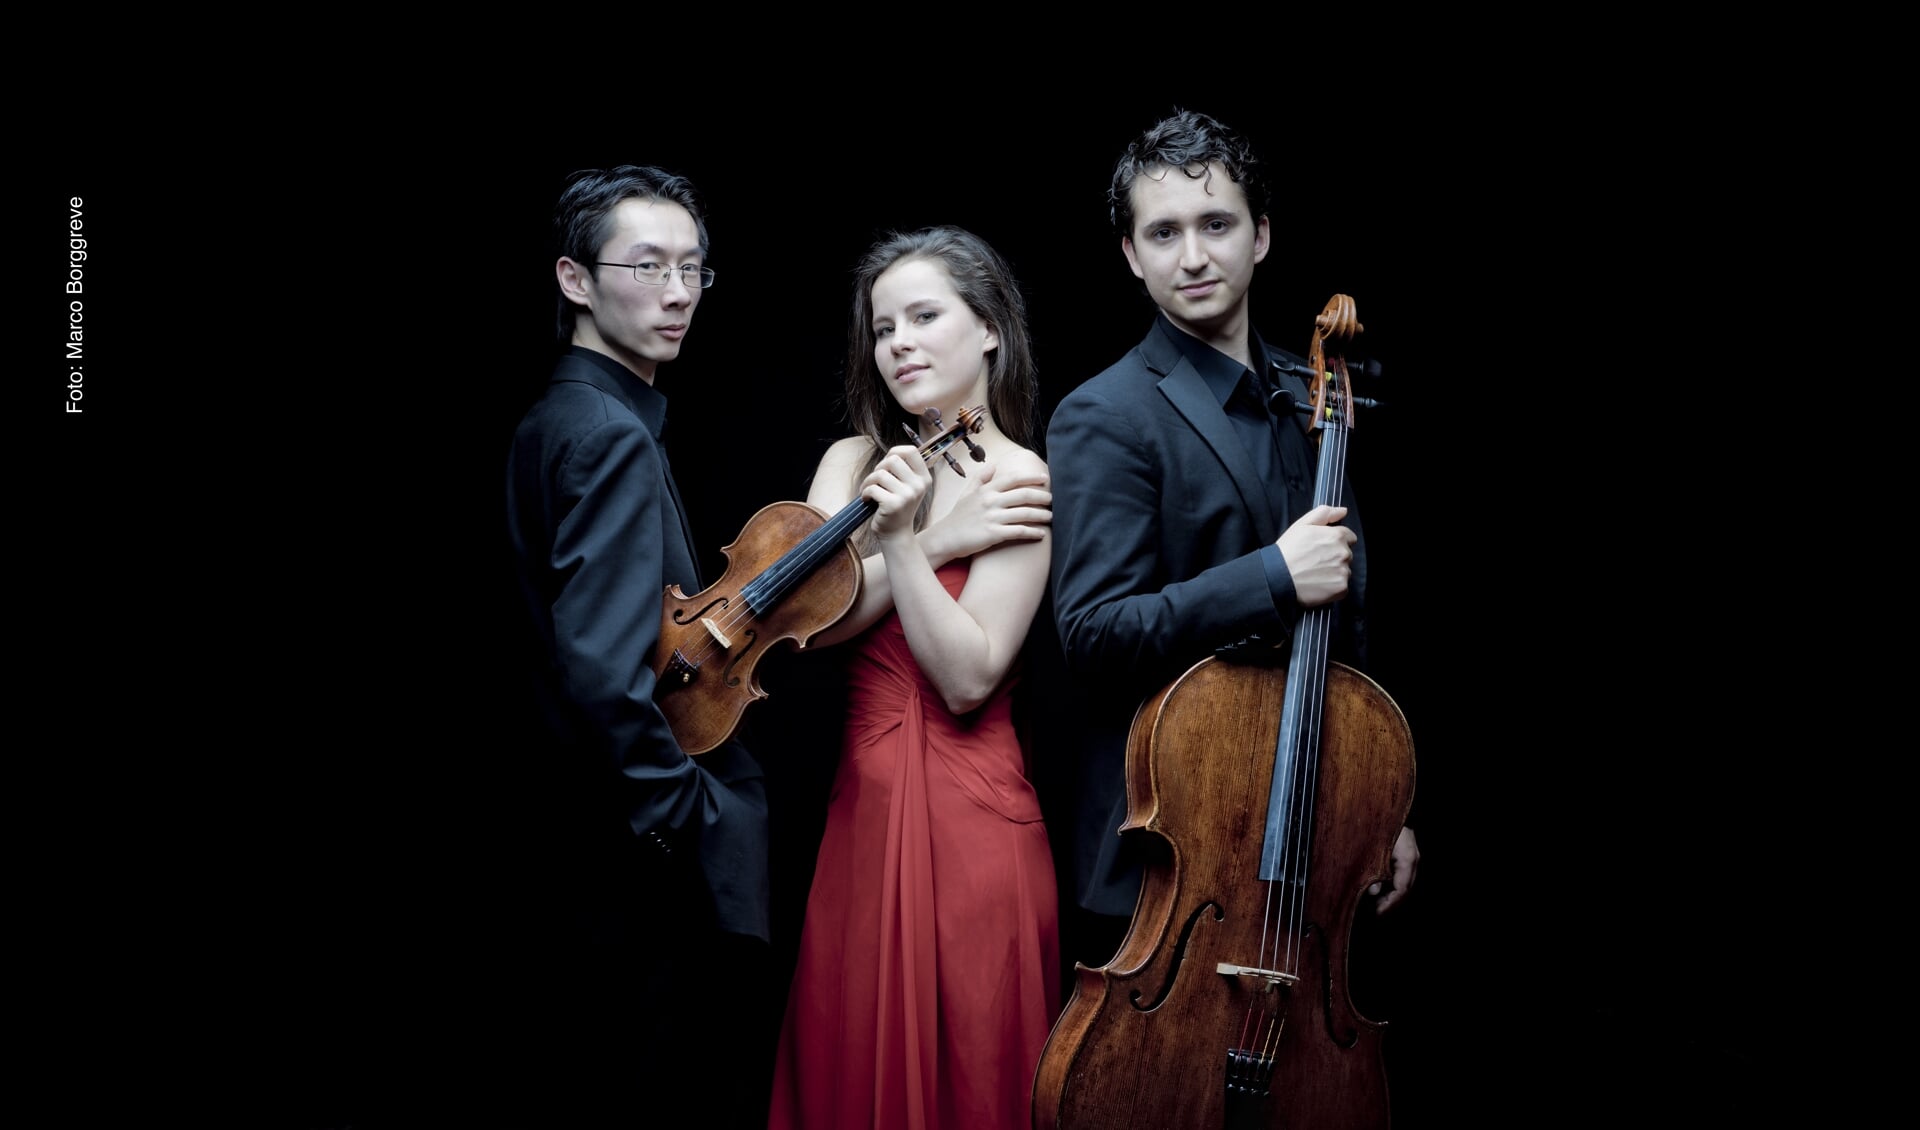 Het Amatis Piano Trio speelt op vrijdag 17 januari heerlijke kamermuziek van Beethoven, Mendelssohn en Sjostakovitsj. 